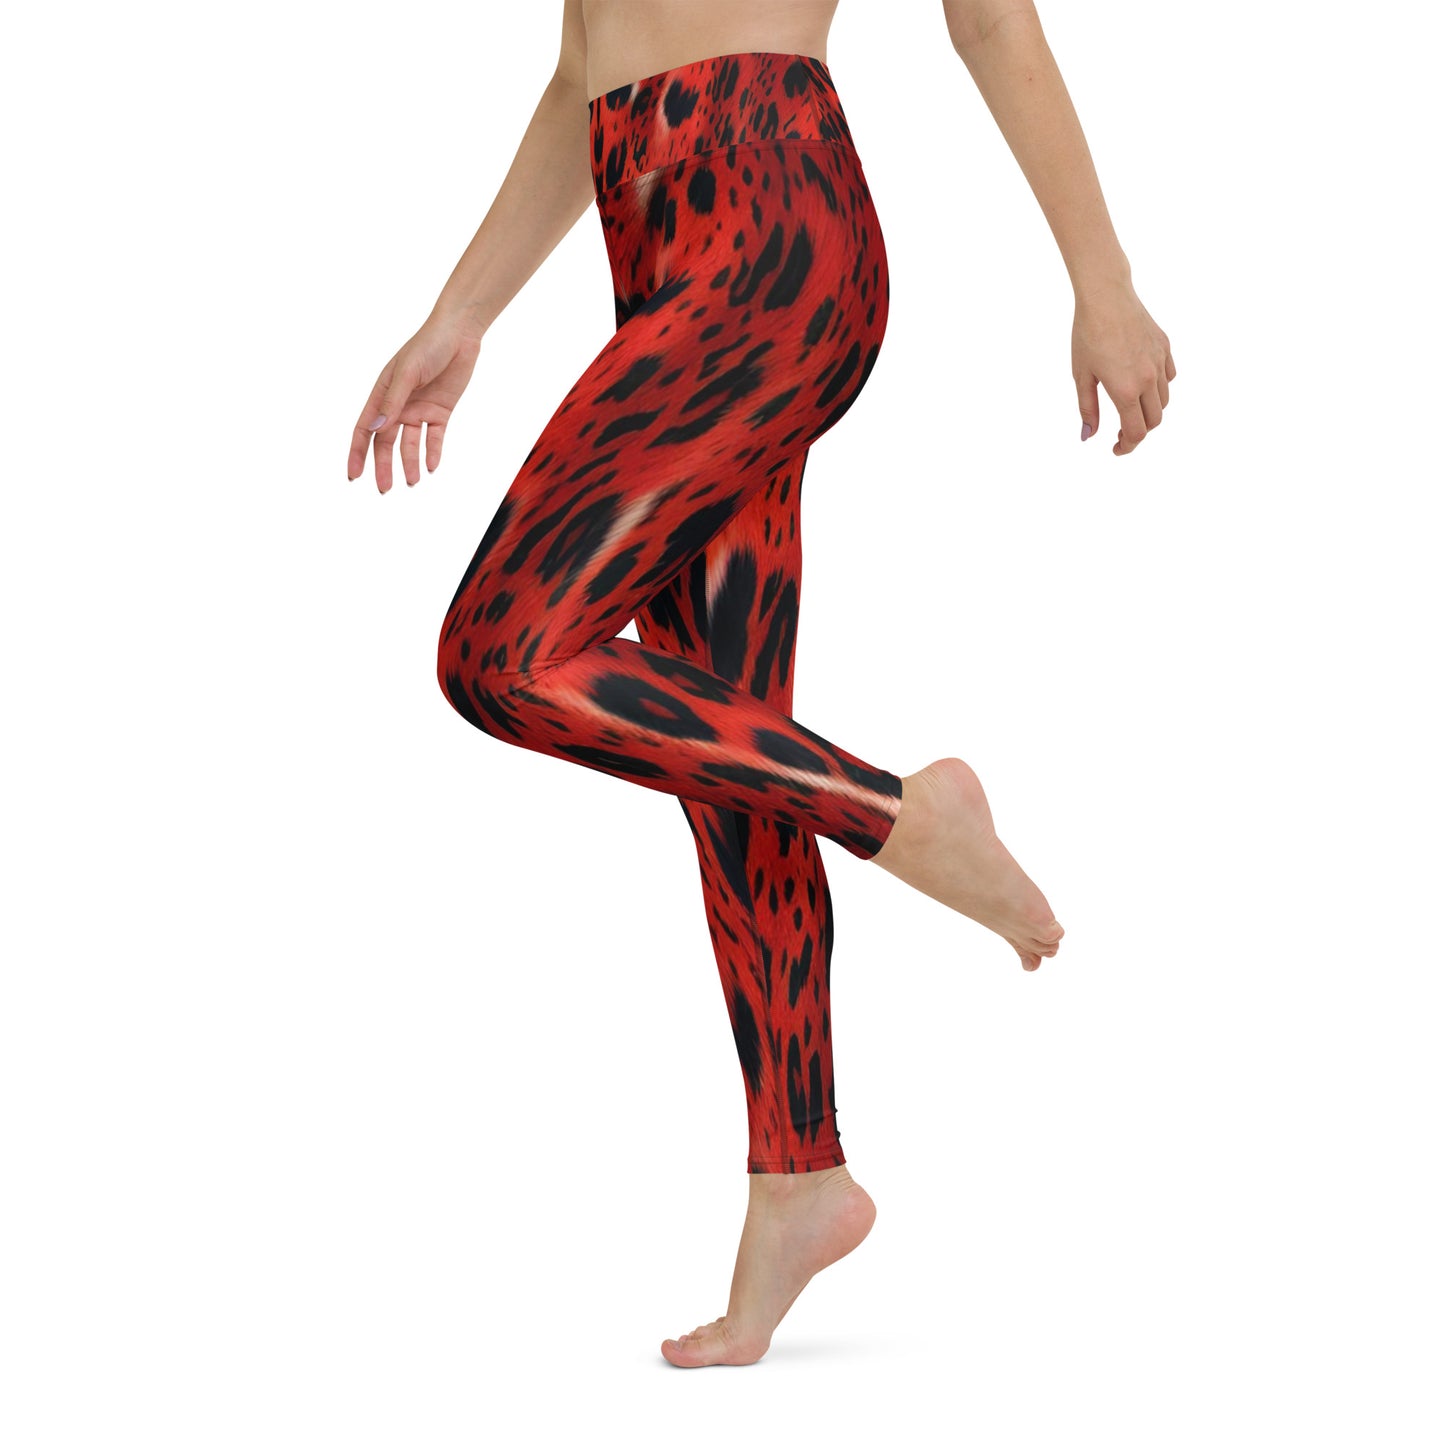 Red Leopard Fur Custom Print Yoga Leggings